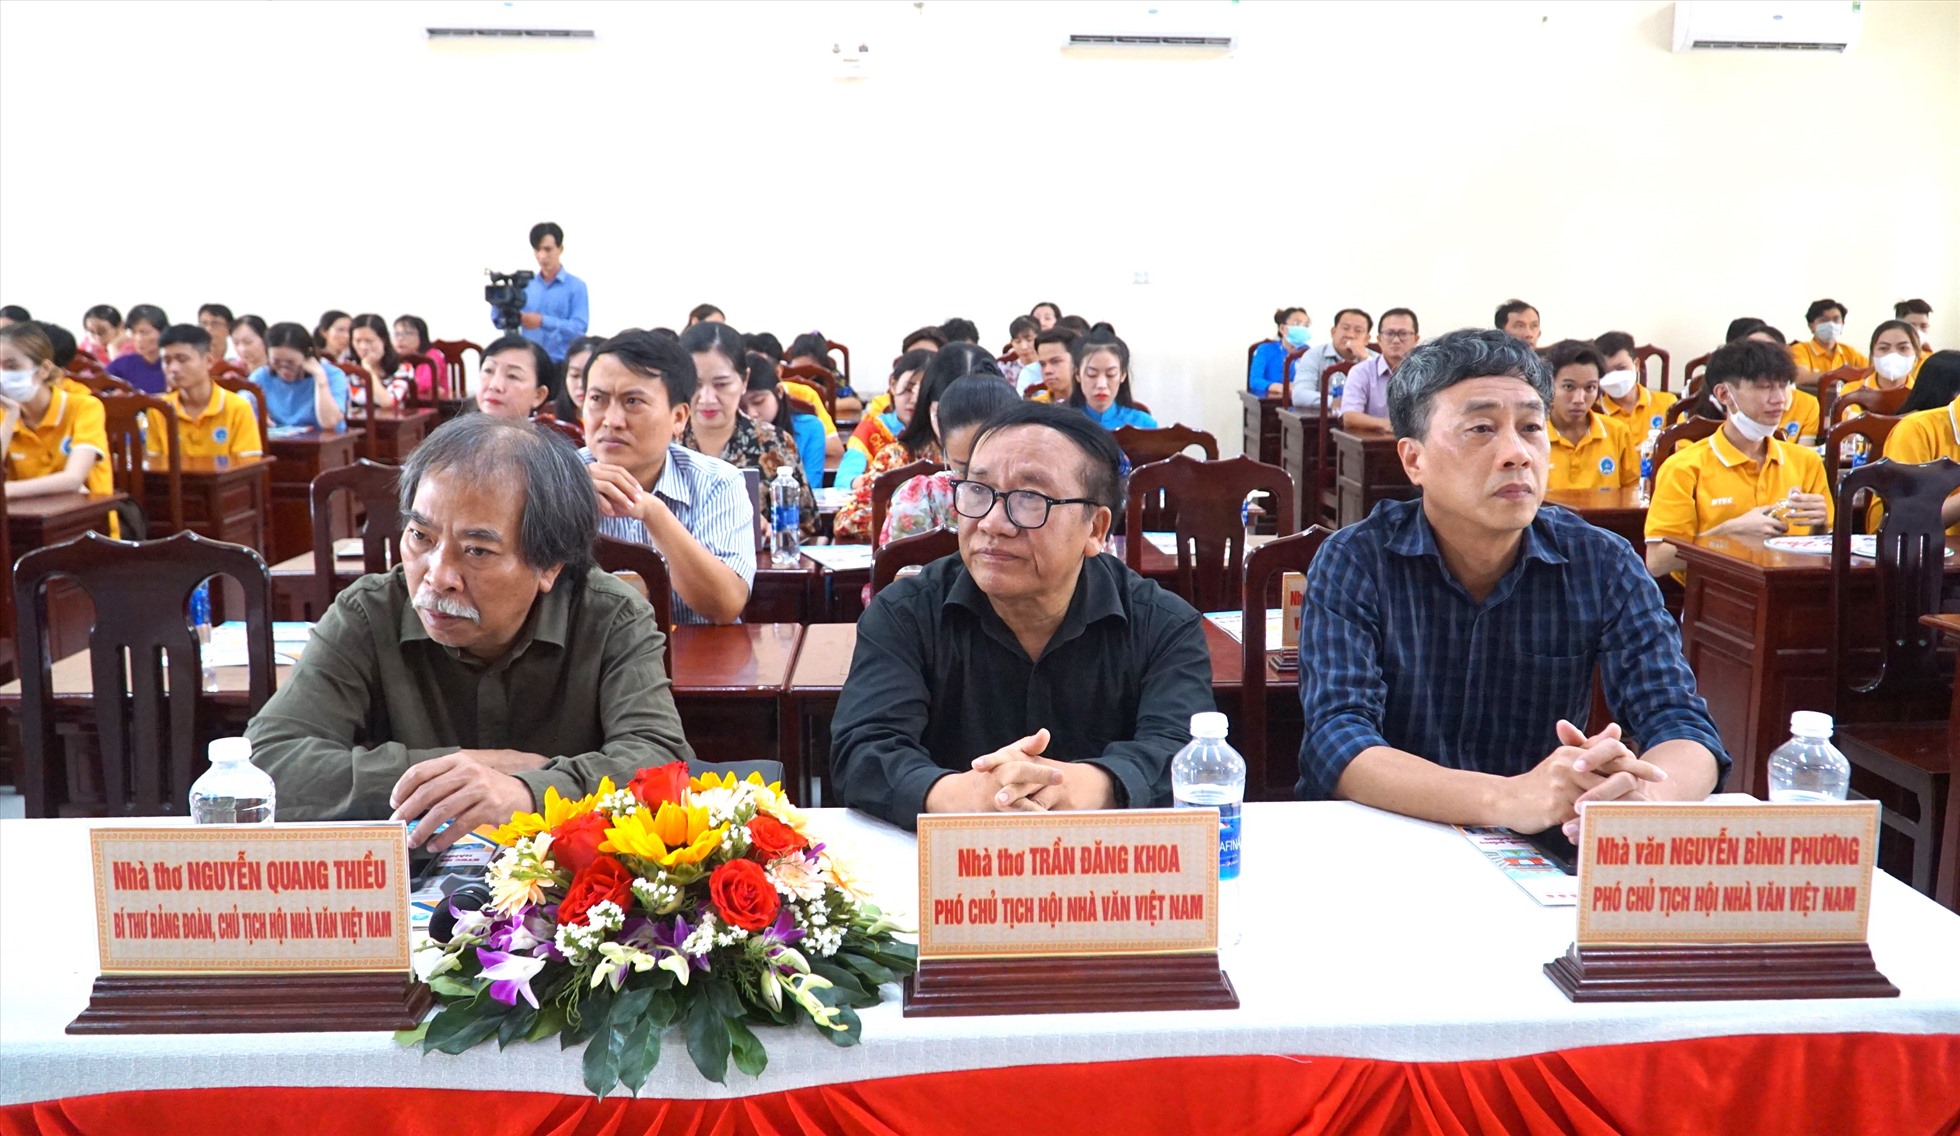 Lần đầu tiên Chủ tịch, hai Phó chủ tịch Hội Nhà văn Việt Nam có mặt giao lưu với Trường Cao đẳng Kinh tế Kỹ thuật tỉnh Bạc Liêu. Ảnh: Nhật Hồ